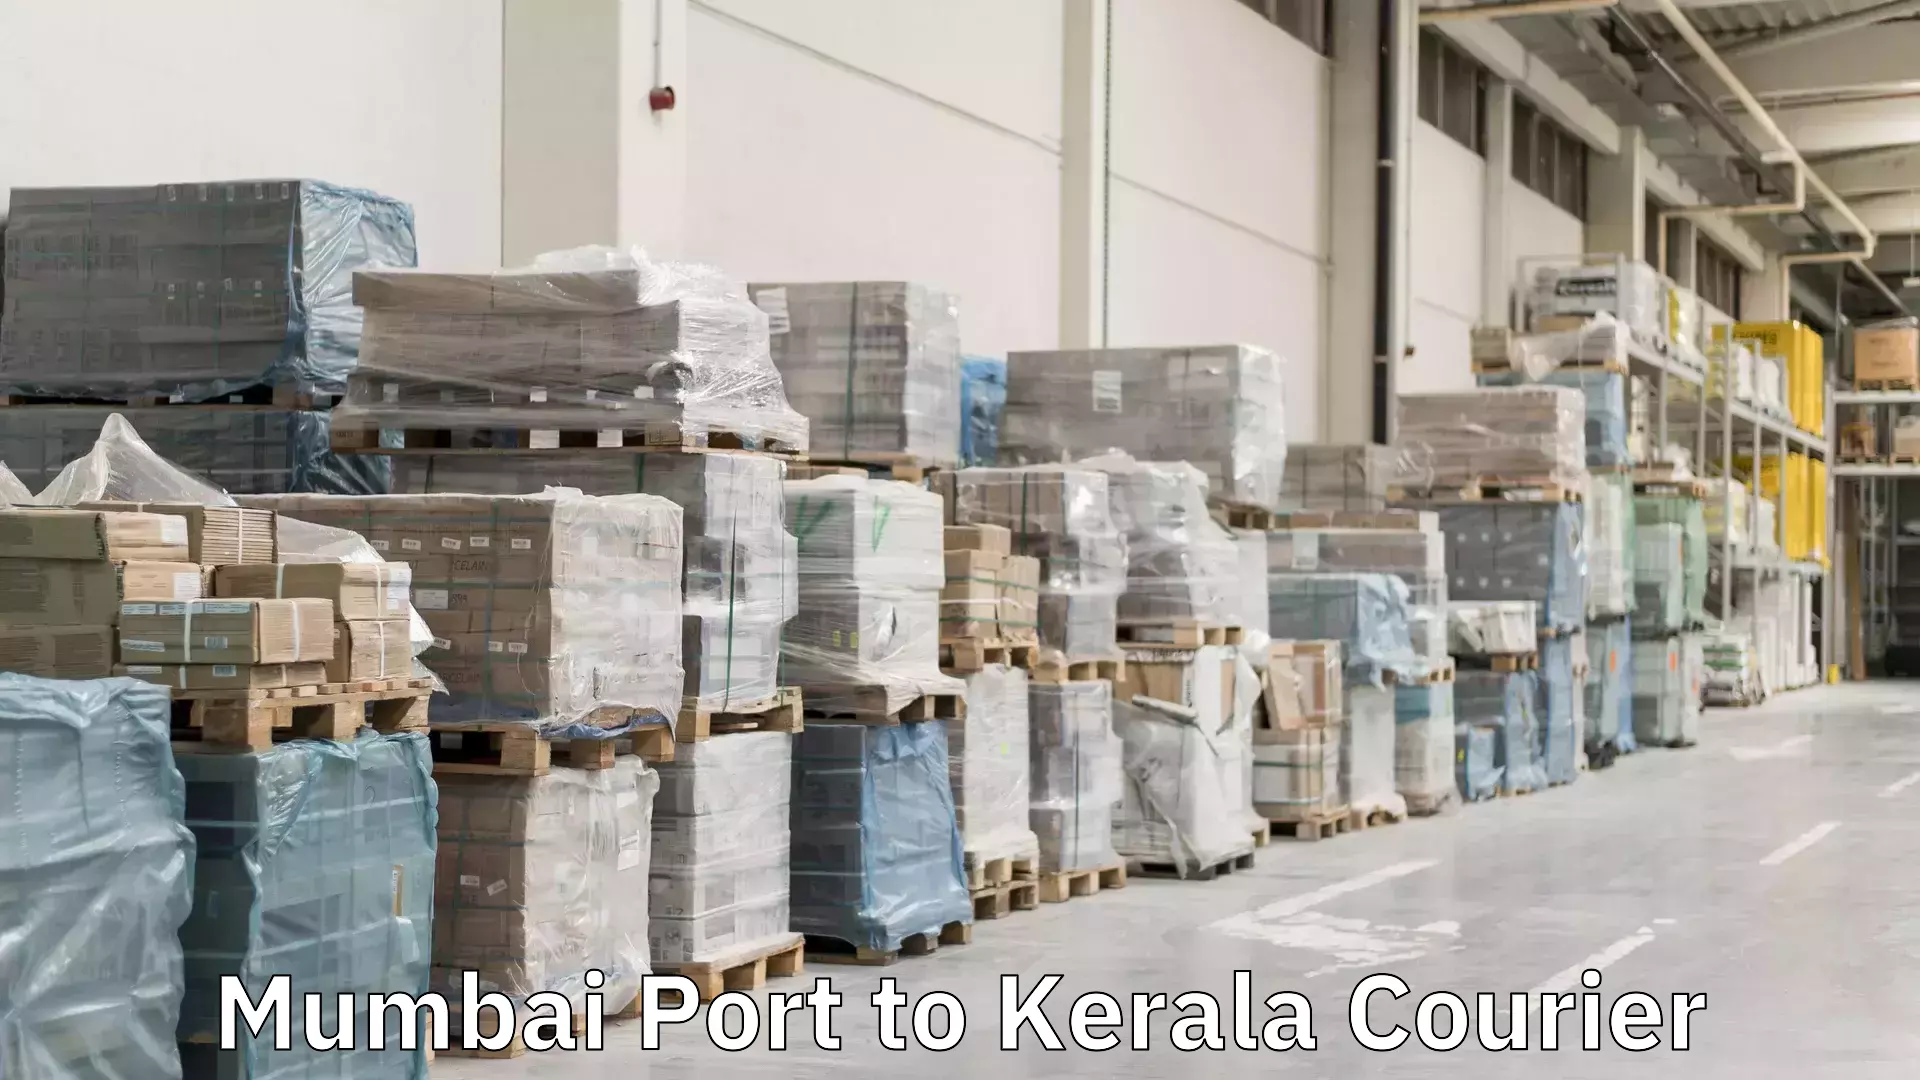 Next-day freight services Mumbai Port to Kerala